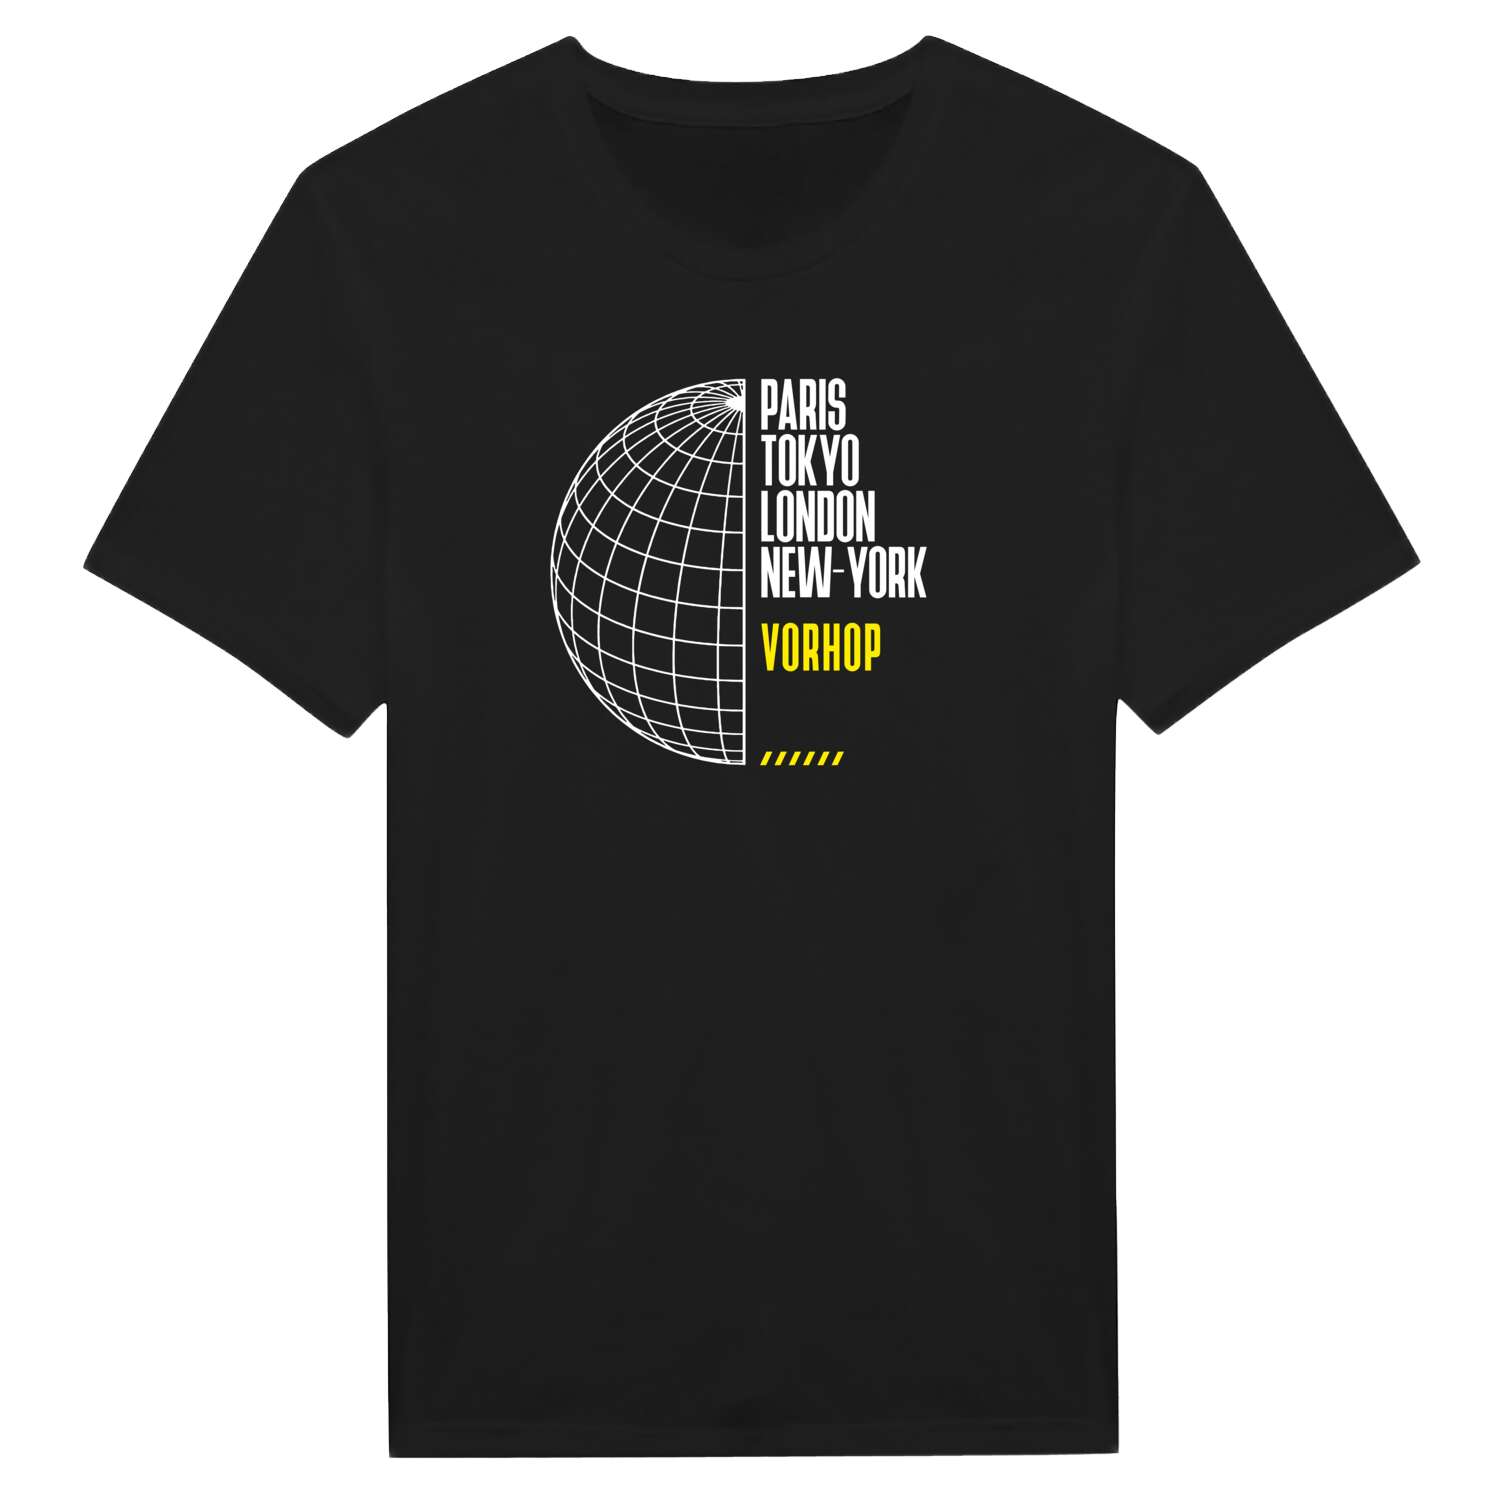 Vorhop T-Shirt »Paris Tokyo London«